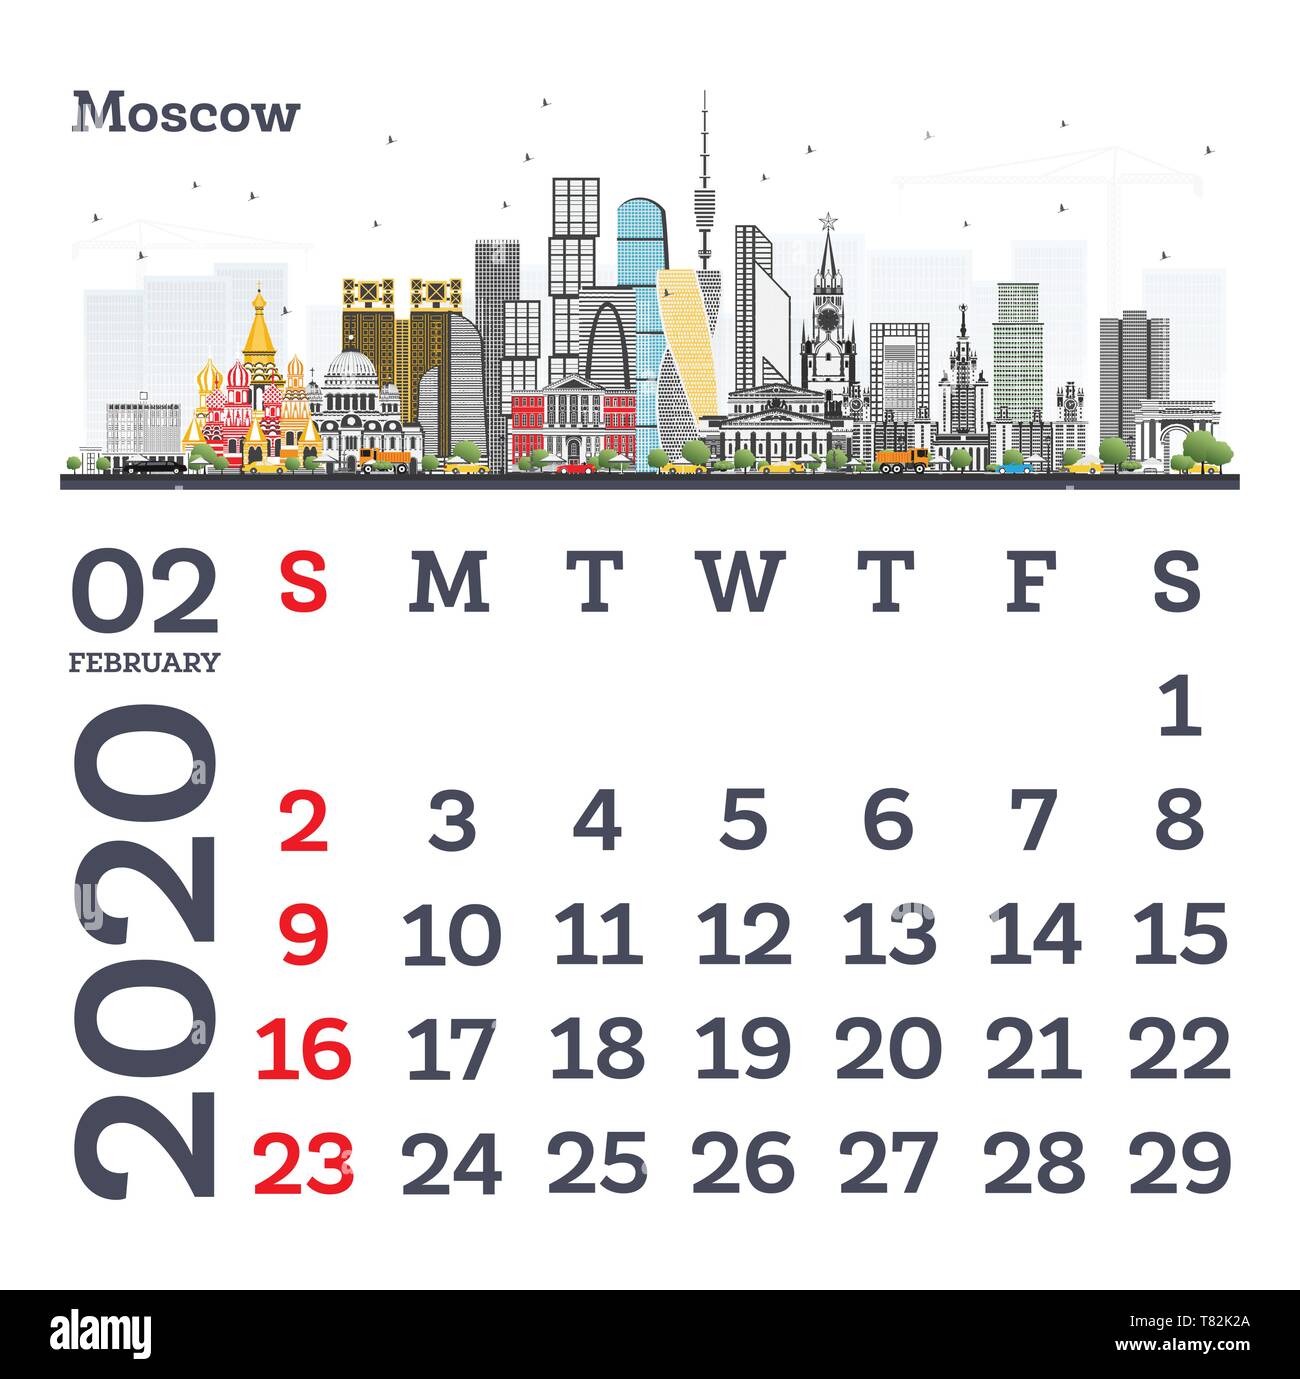 Februar 2020 Vorlage Kalender mit Moskau City Skyline. Vector Illustration. Vorlage für Drucken. Woche beginnt ab Sonntag. Stock Vektor